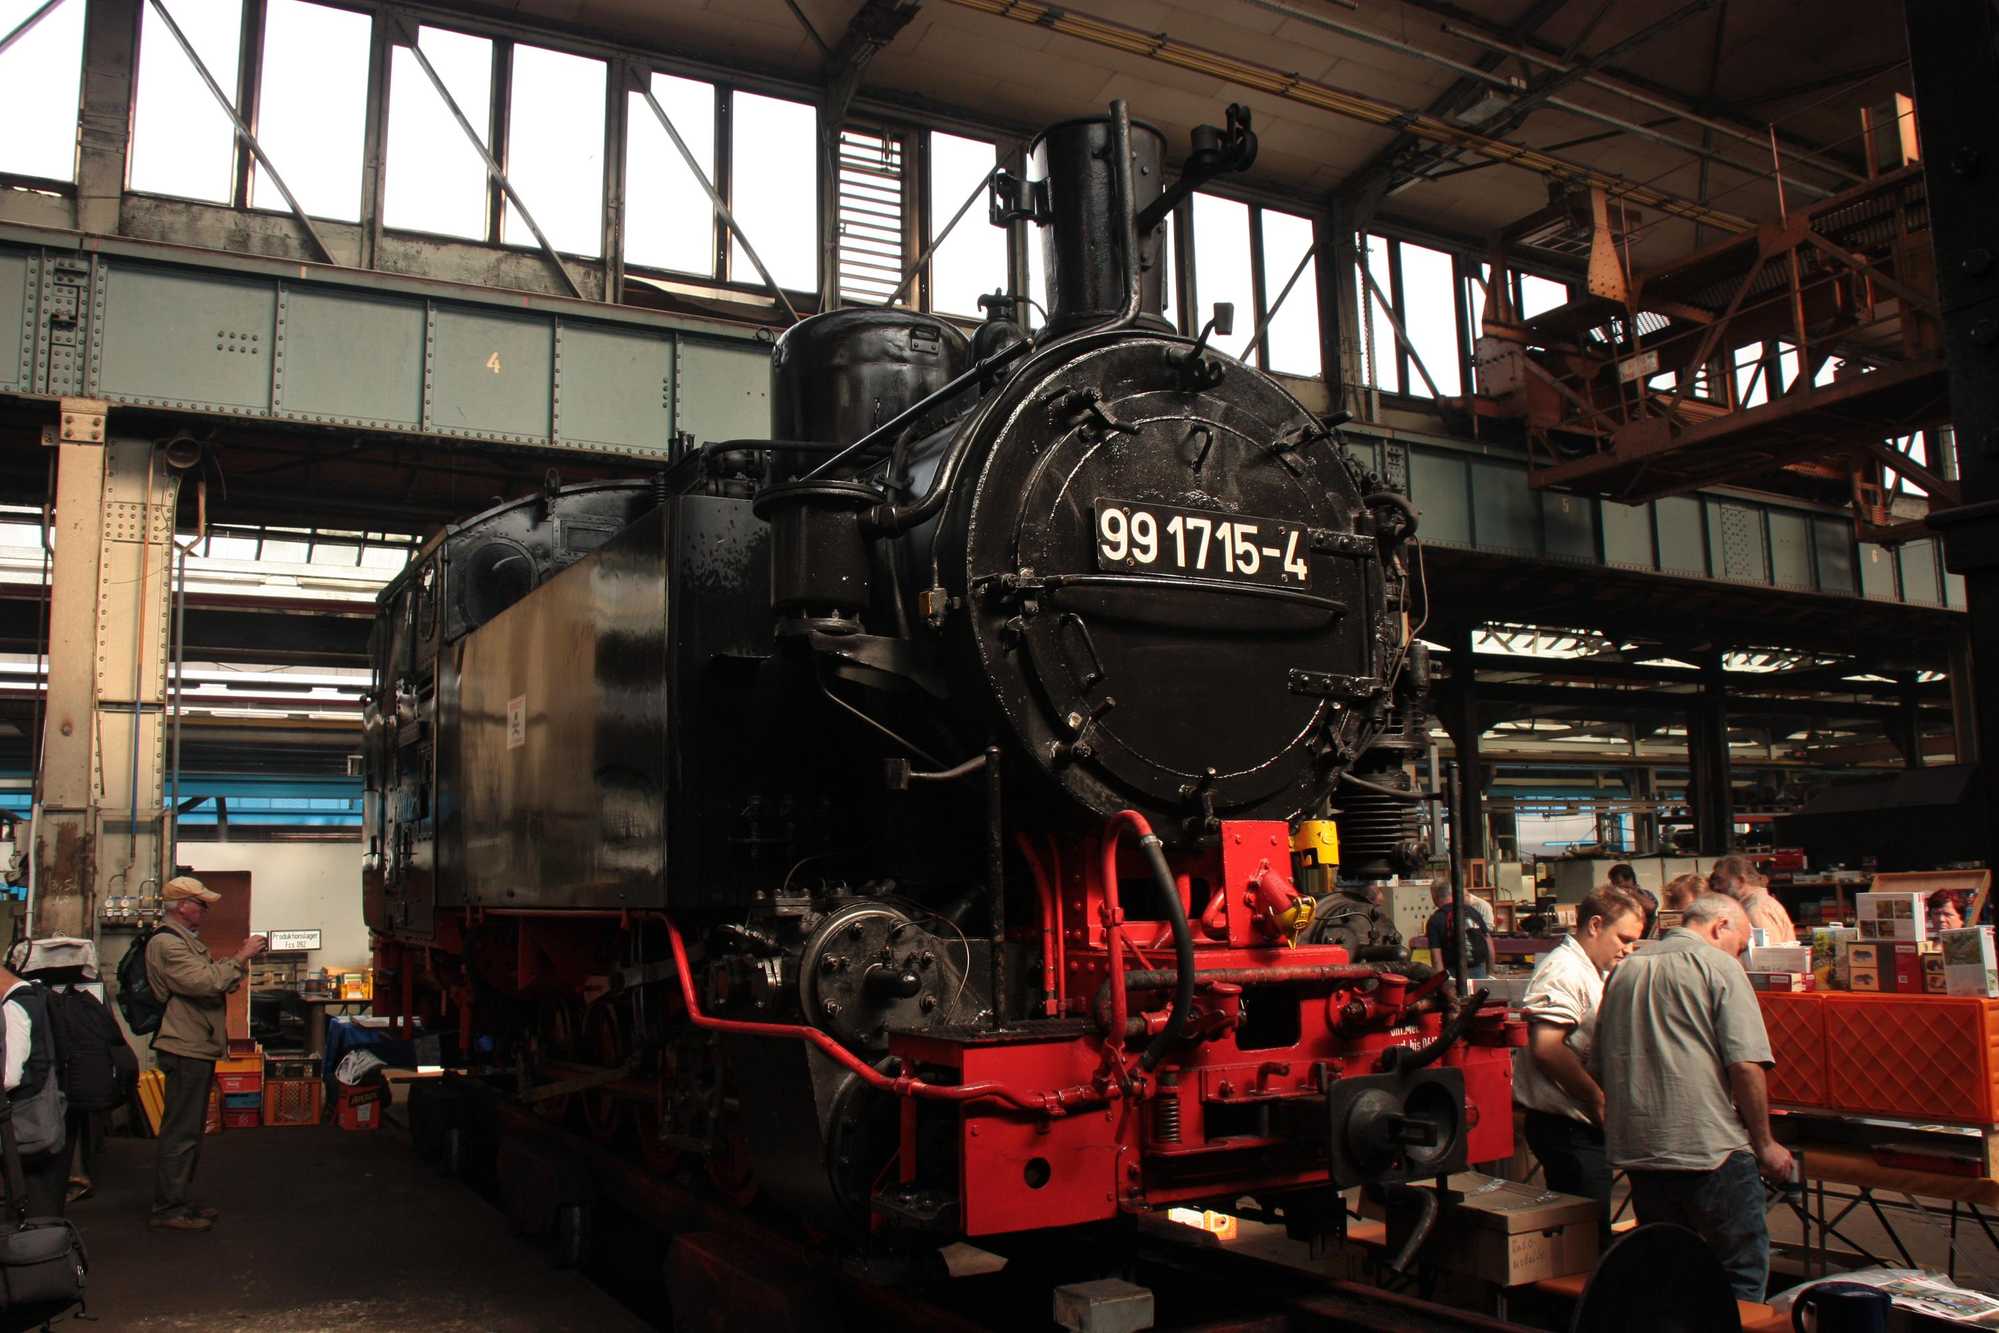 99 1715-4 befindet sich im Dampflokwerk Meiningen, die Arbeiten zur Fahrzeuguntersuchung werden nach den Meininger Dampfloktagen beginnen.